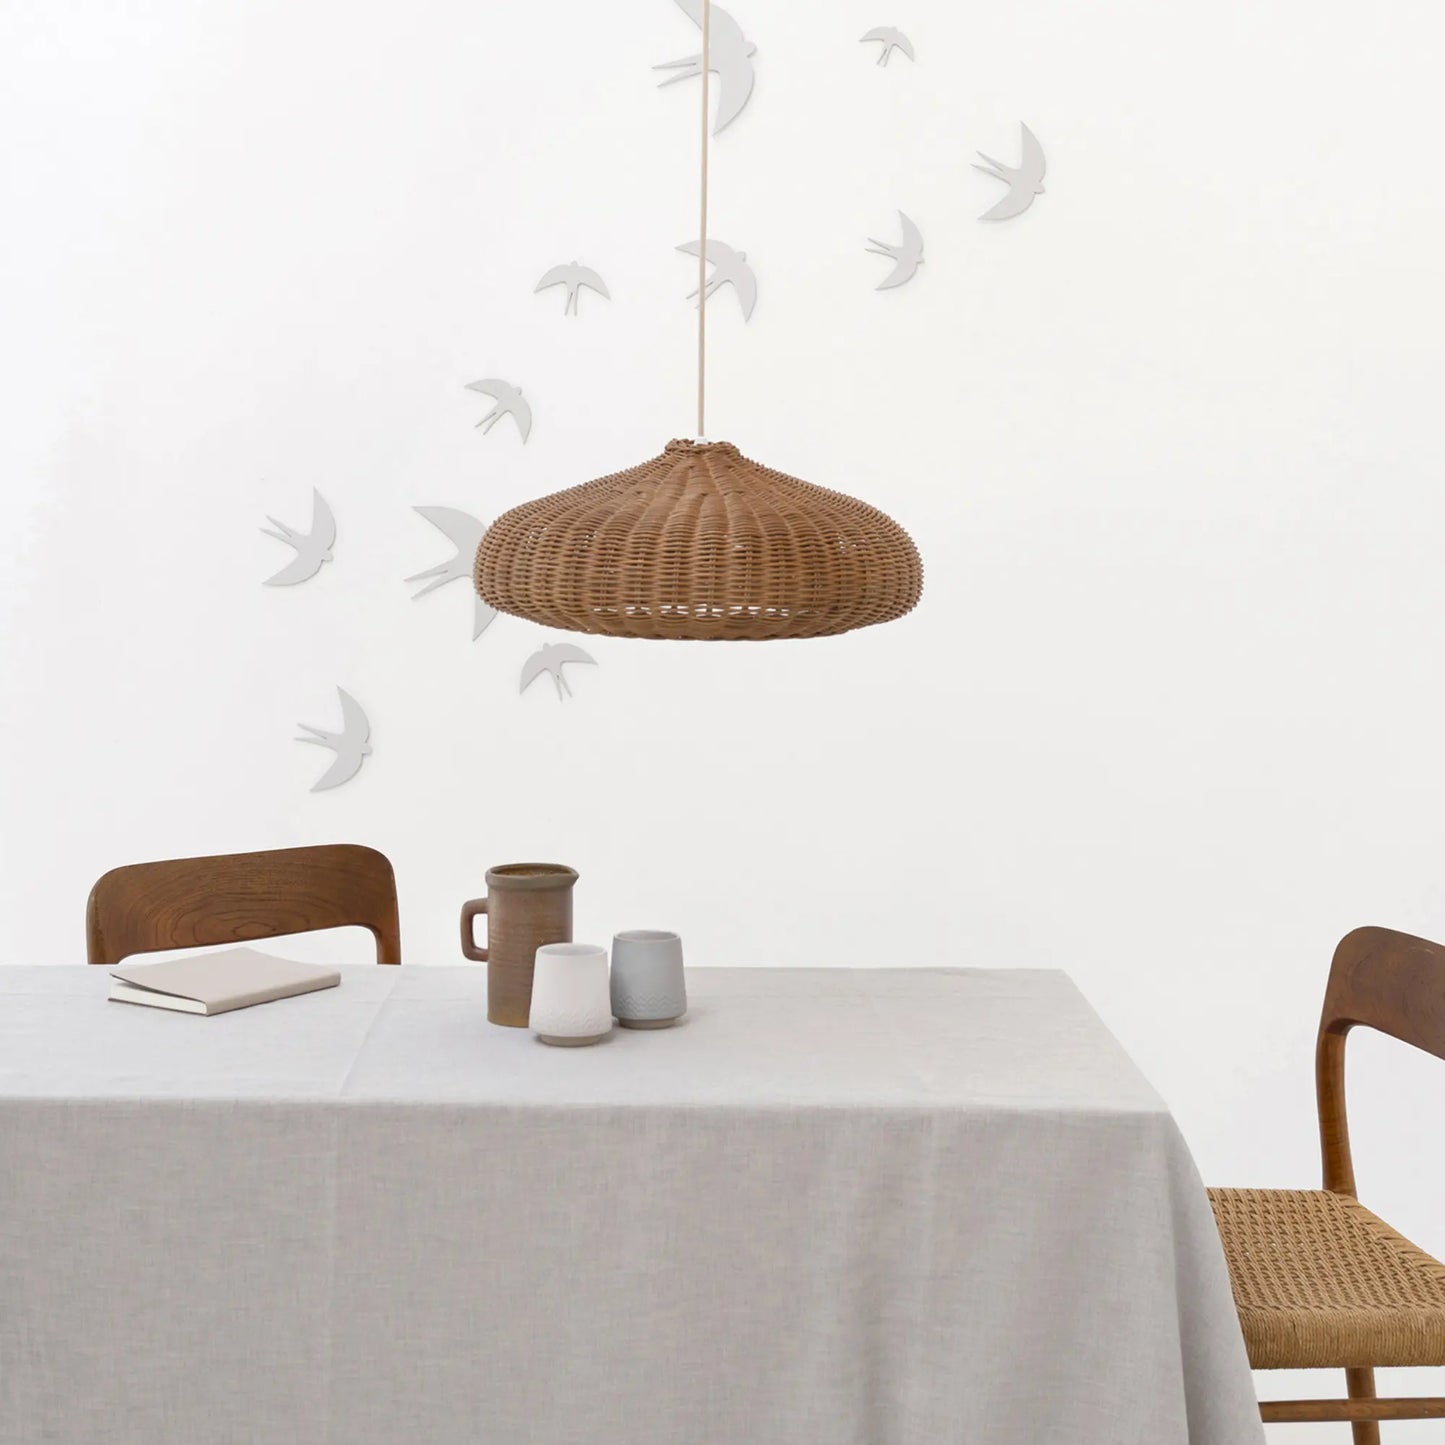 Jurianne Matter | Wanddecoratie van Papieren vogels Sverm | Set van 3 | Lichtgrijs | Conceptstore Sisällä